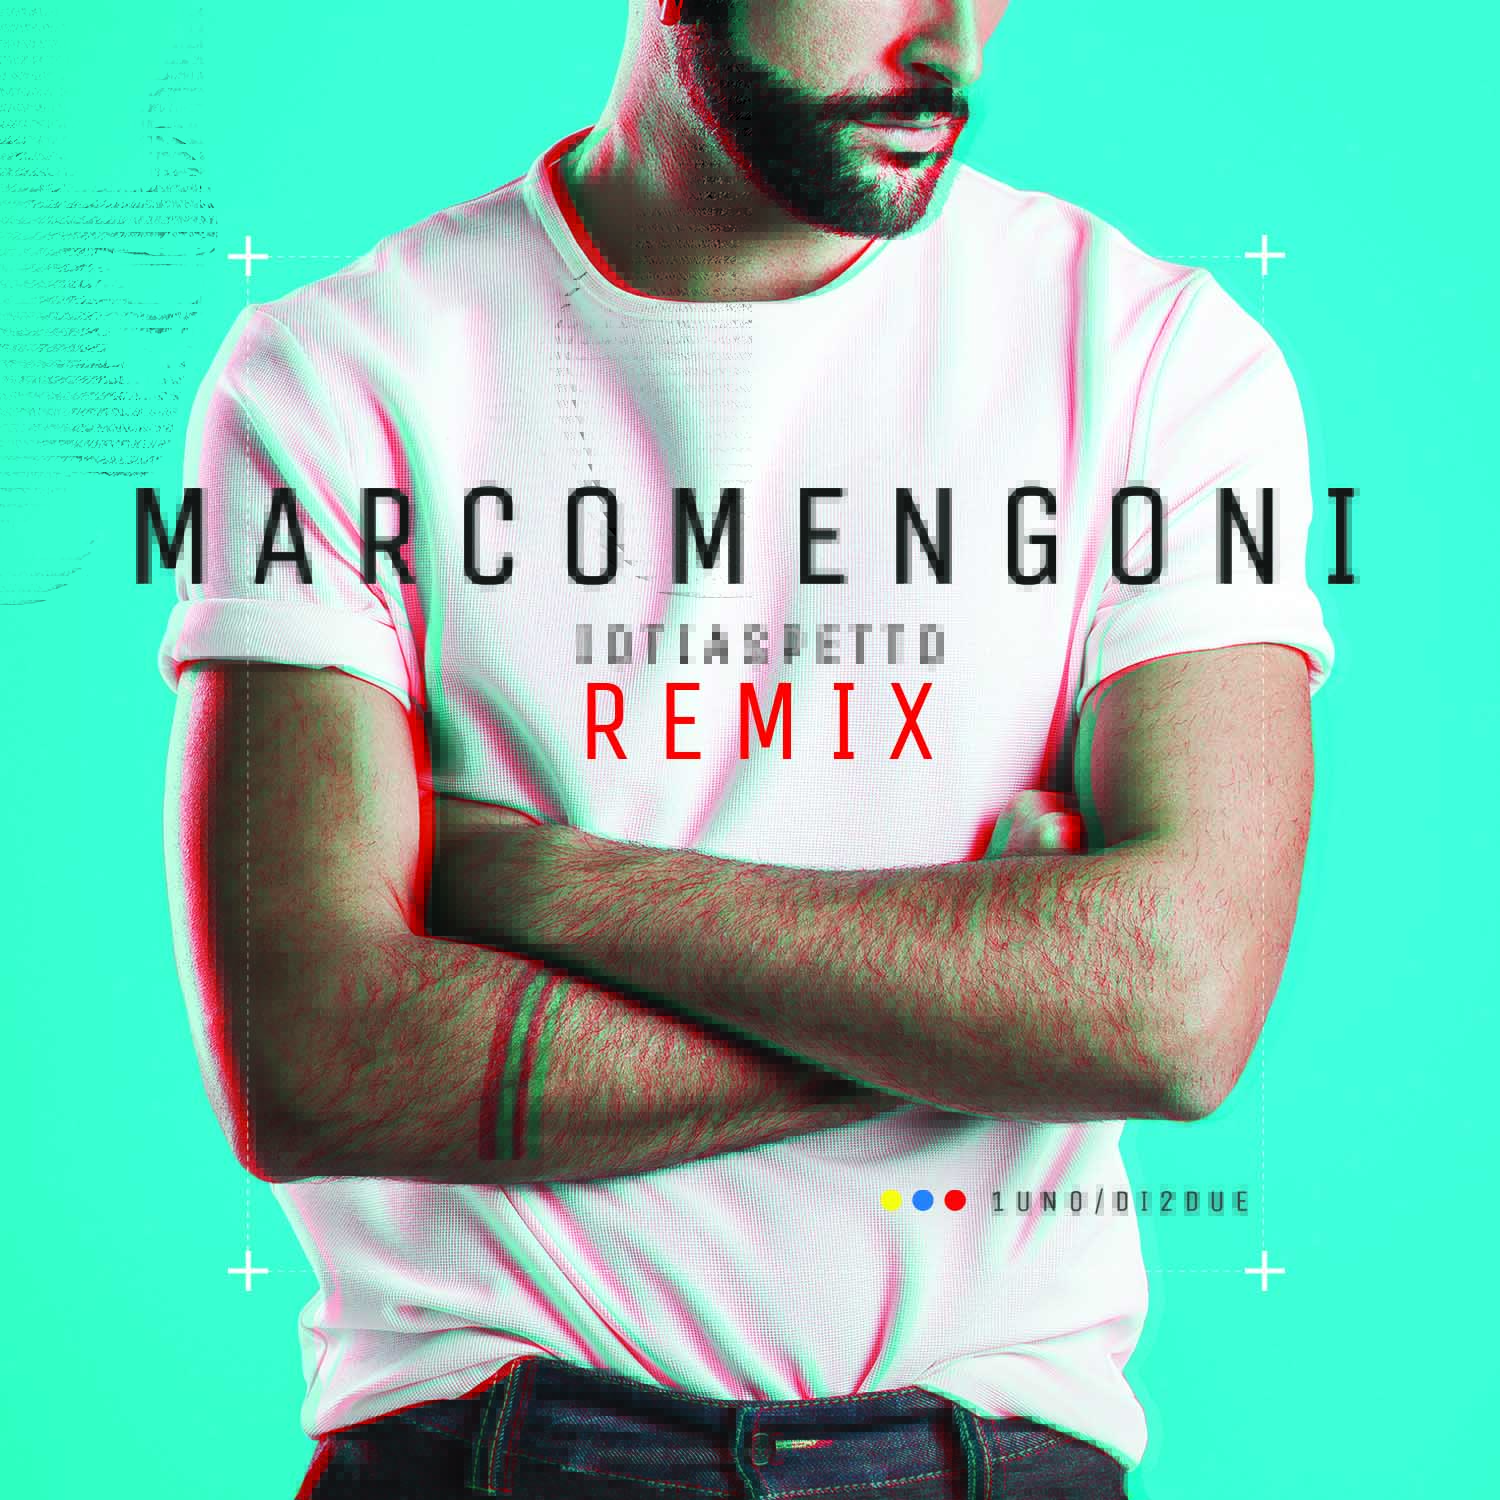  Marco Mengoni, venerdì “Io ti aspetto remix” e una ghost track sull’app ufficiale